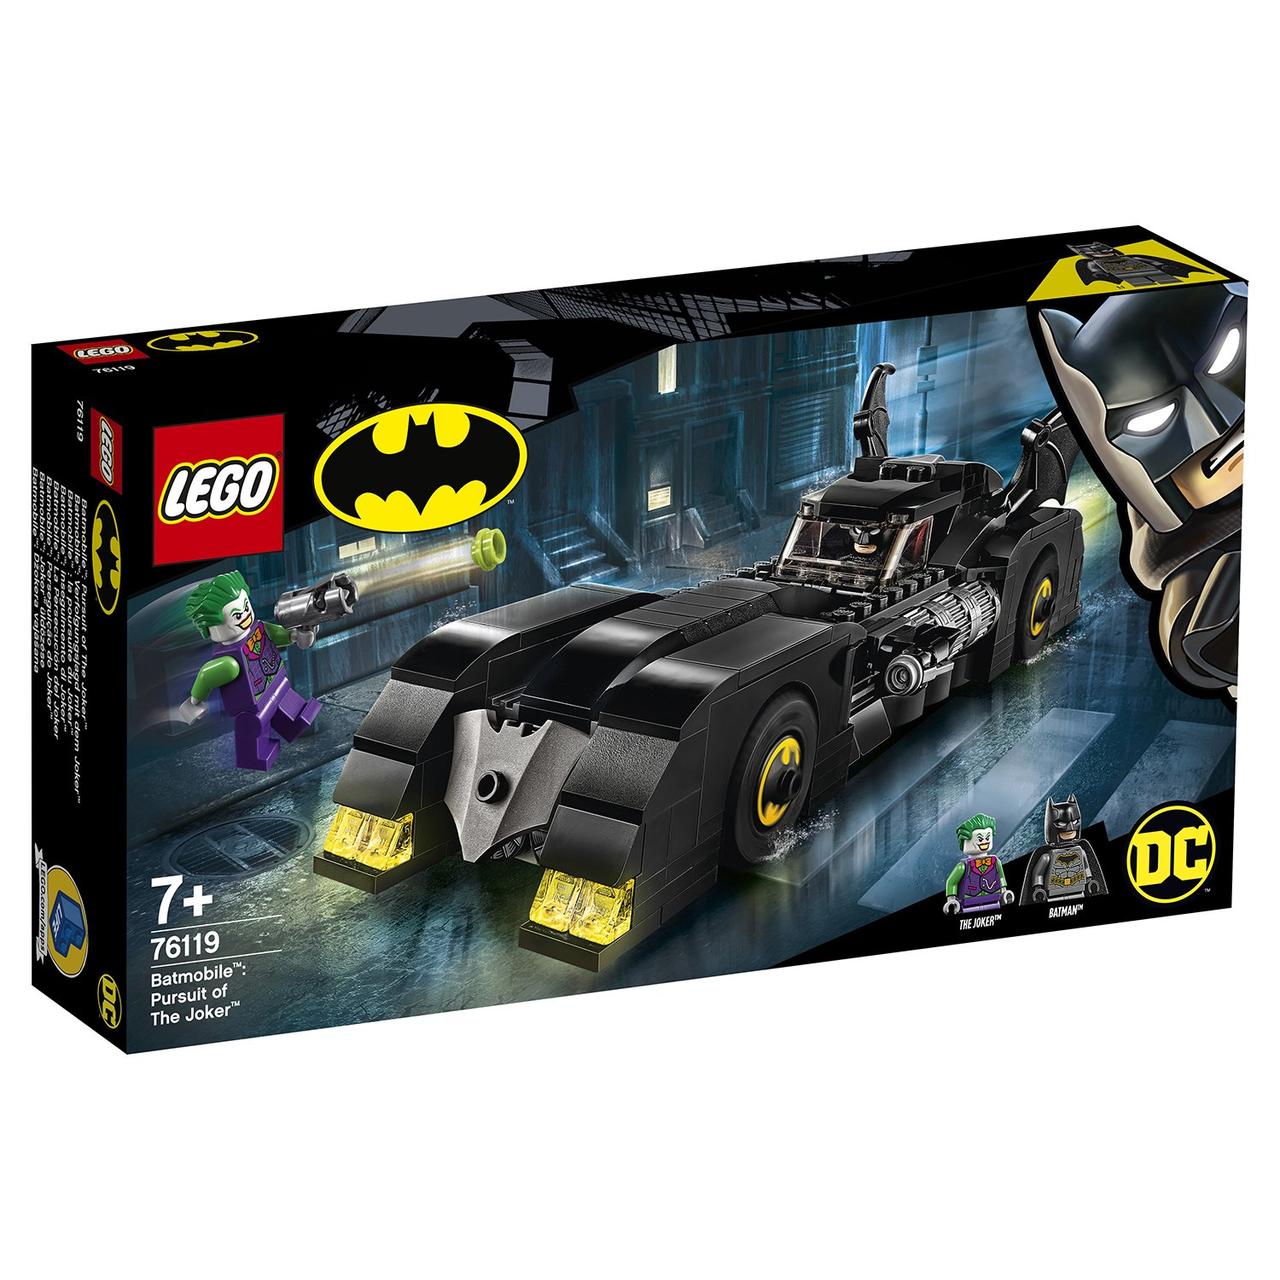 76119 Lego Super Heroes Бэтмобиль: Погоня за Джокером, Лего Супергерои DC